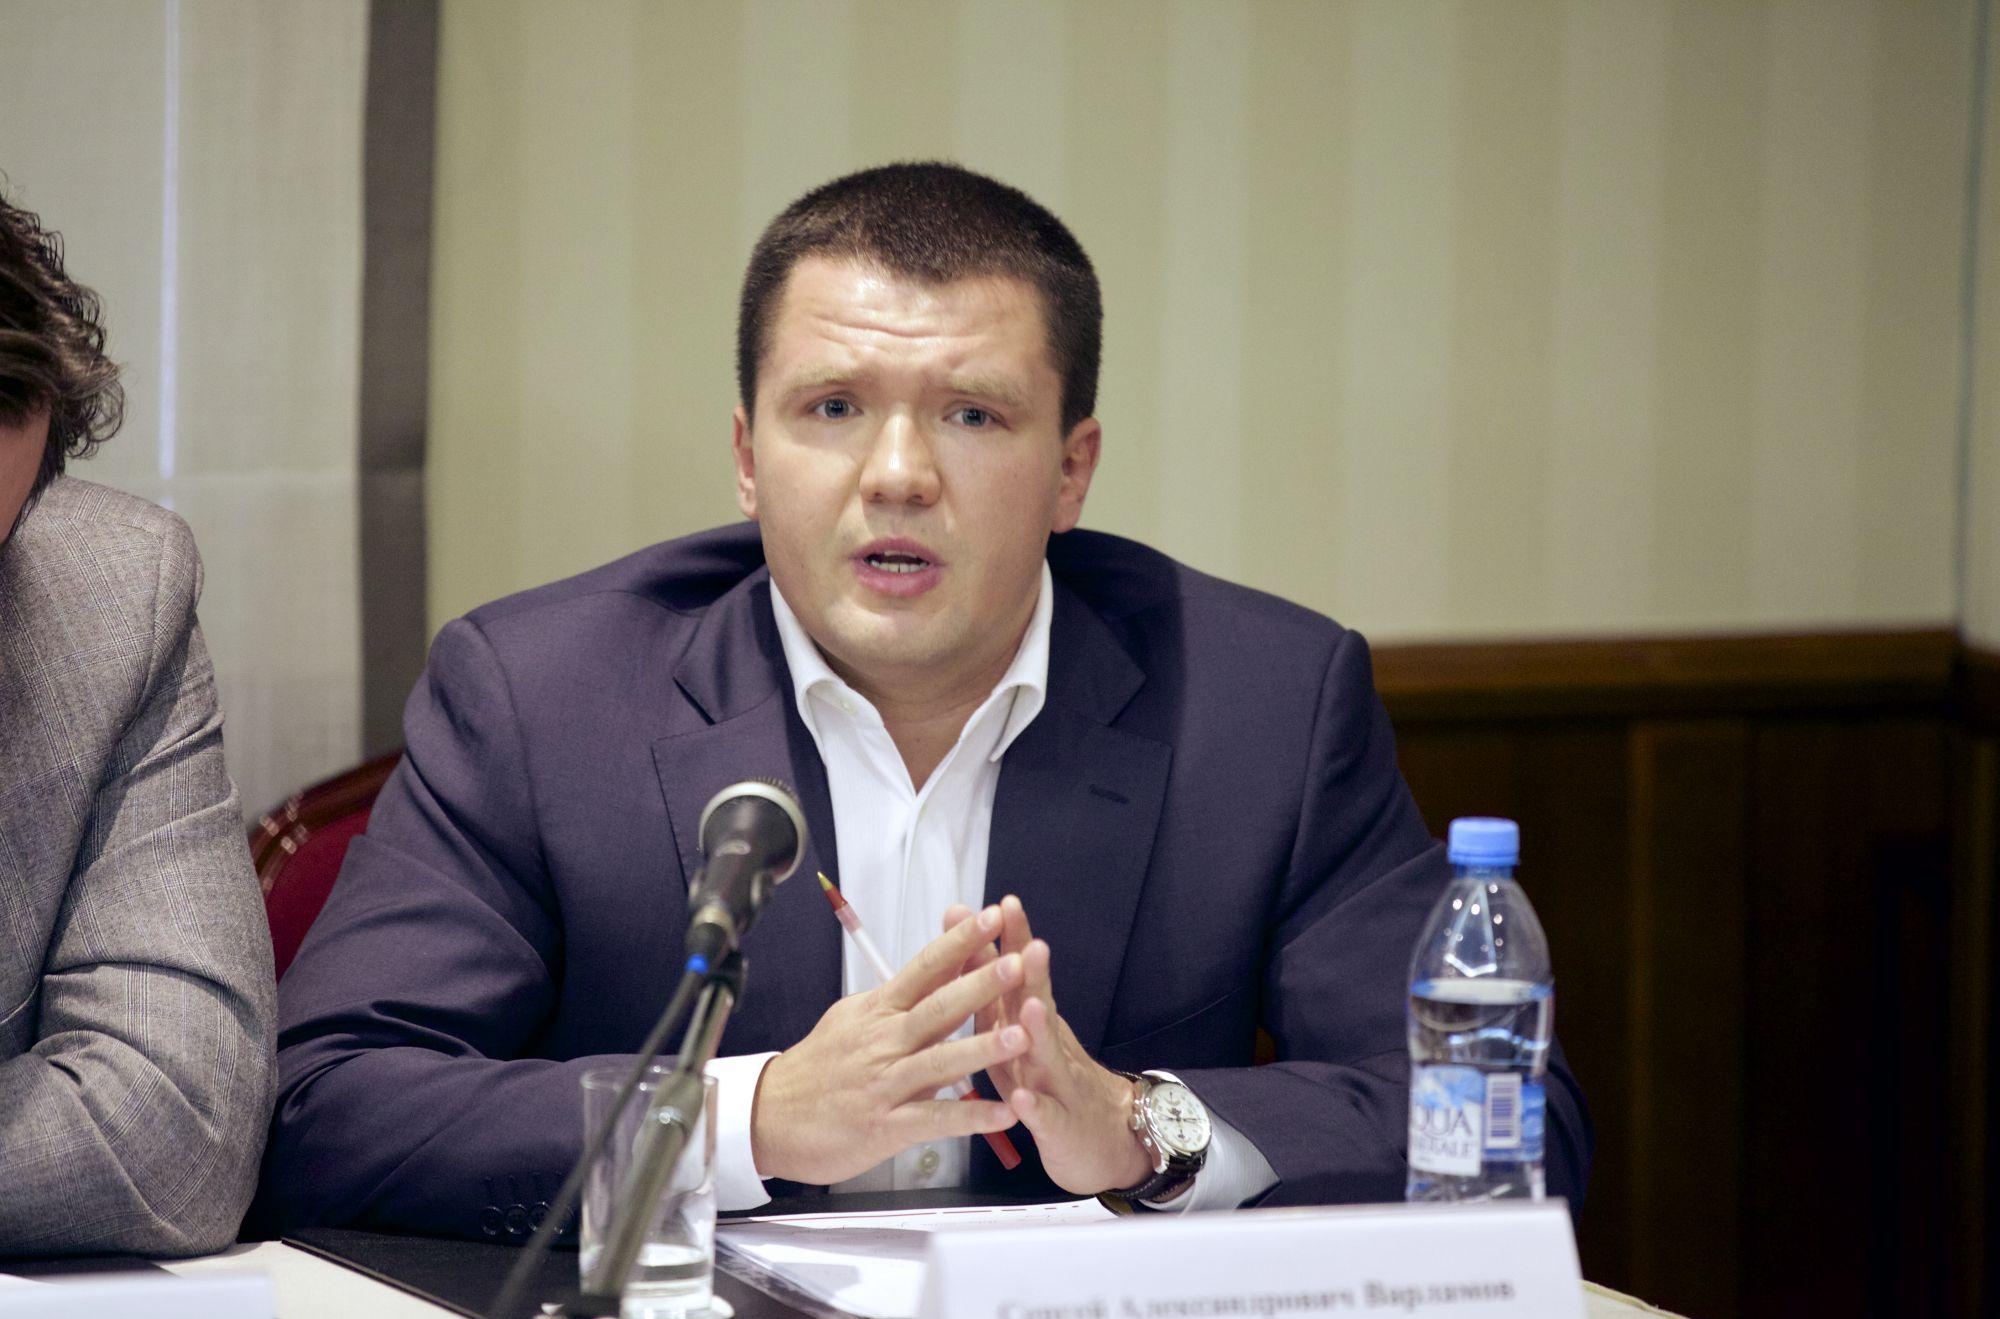 Сергей Варламов, председатель правового комитета Ассоциации молодых